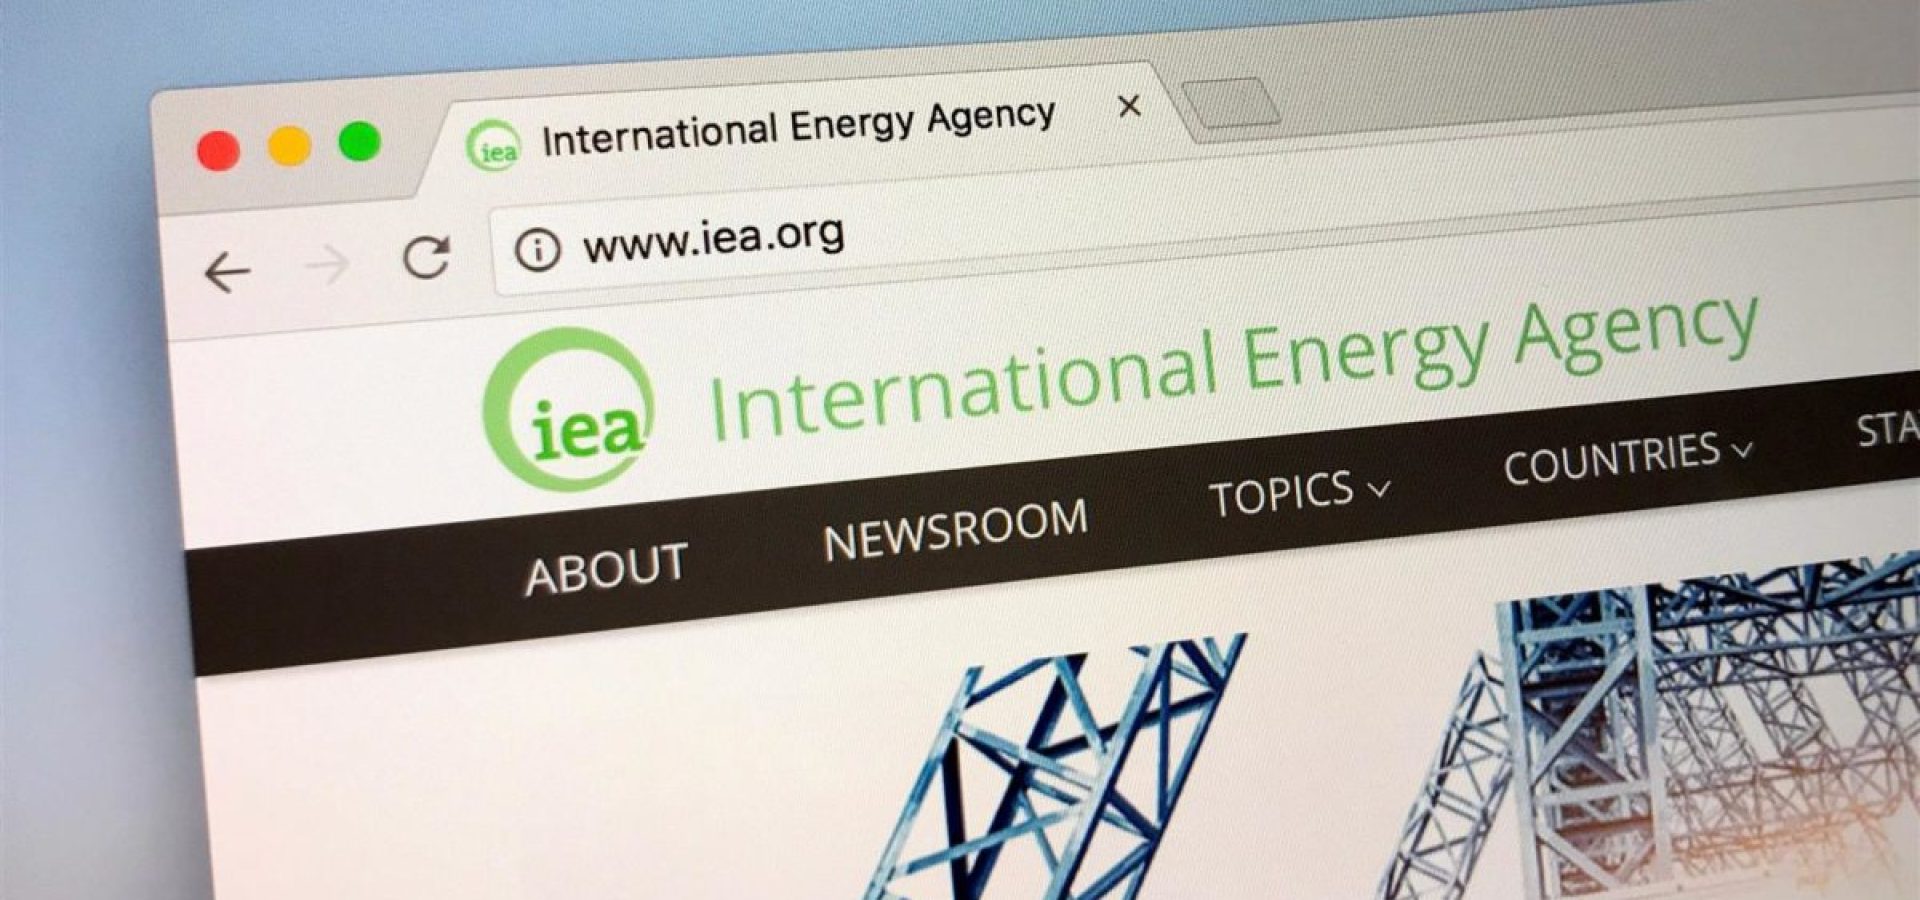 Global economy and energy agency